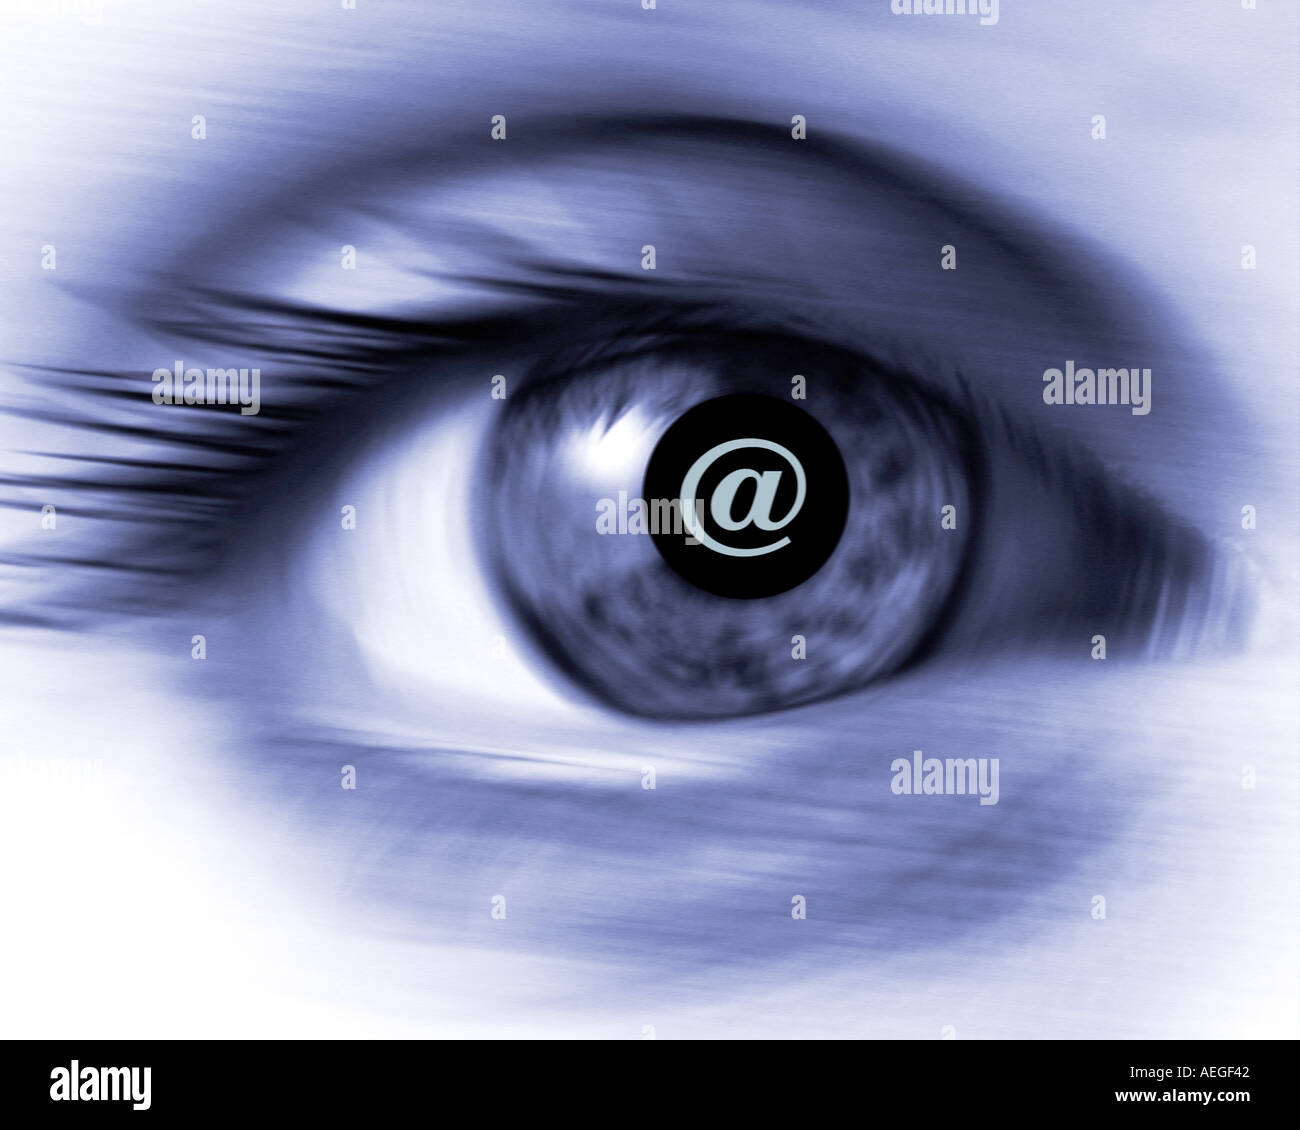 Ufficio palpebra ciglia iris orbita oculare occhi presa vista bianco nero b w bluastro sfocatura sfocata rileva visione retro varie Foto Stock